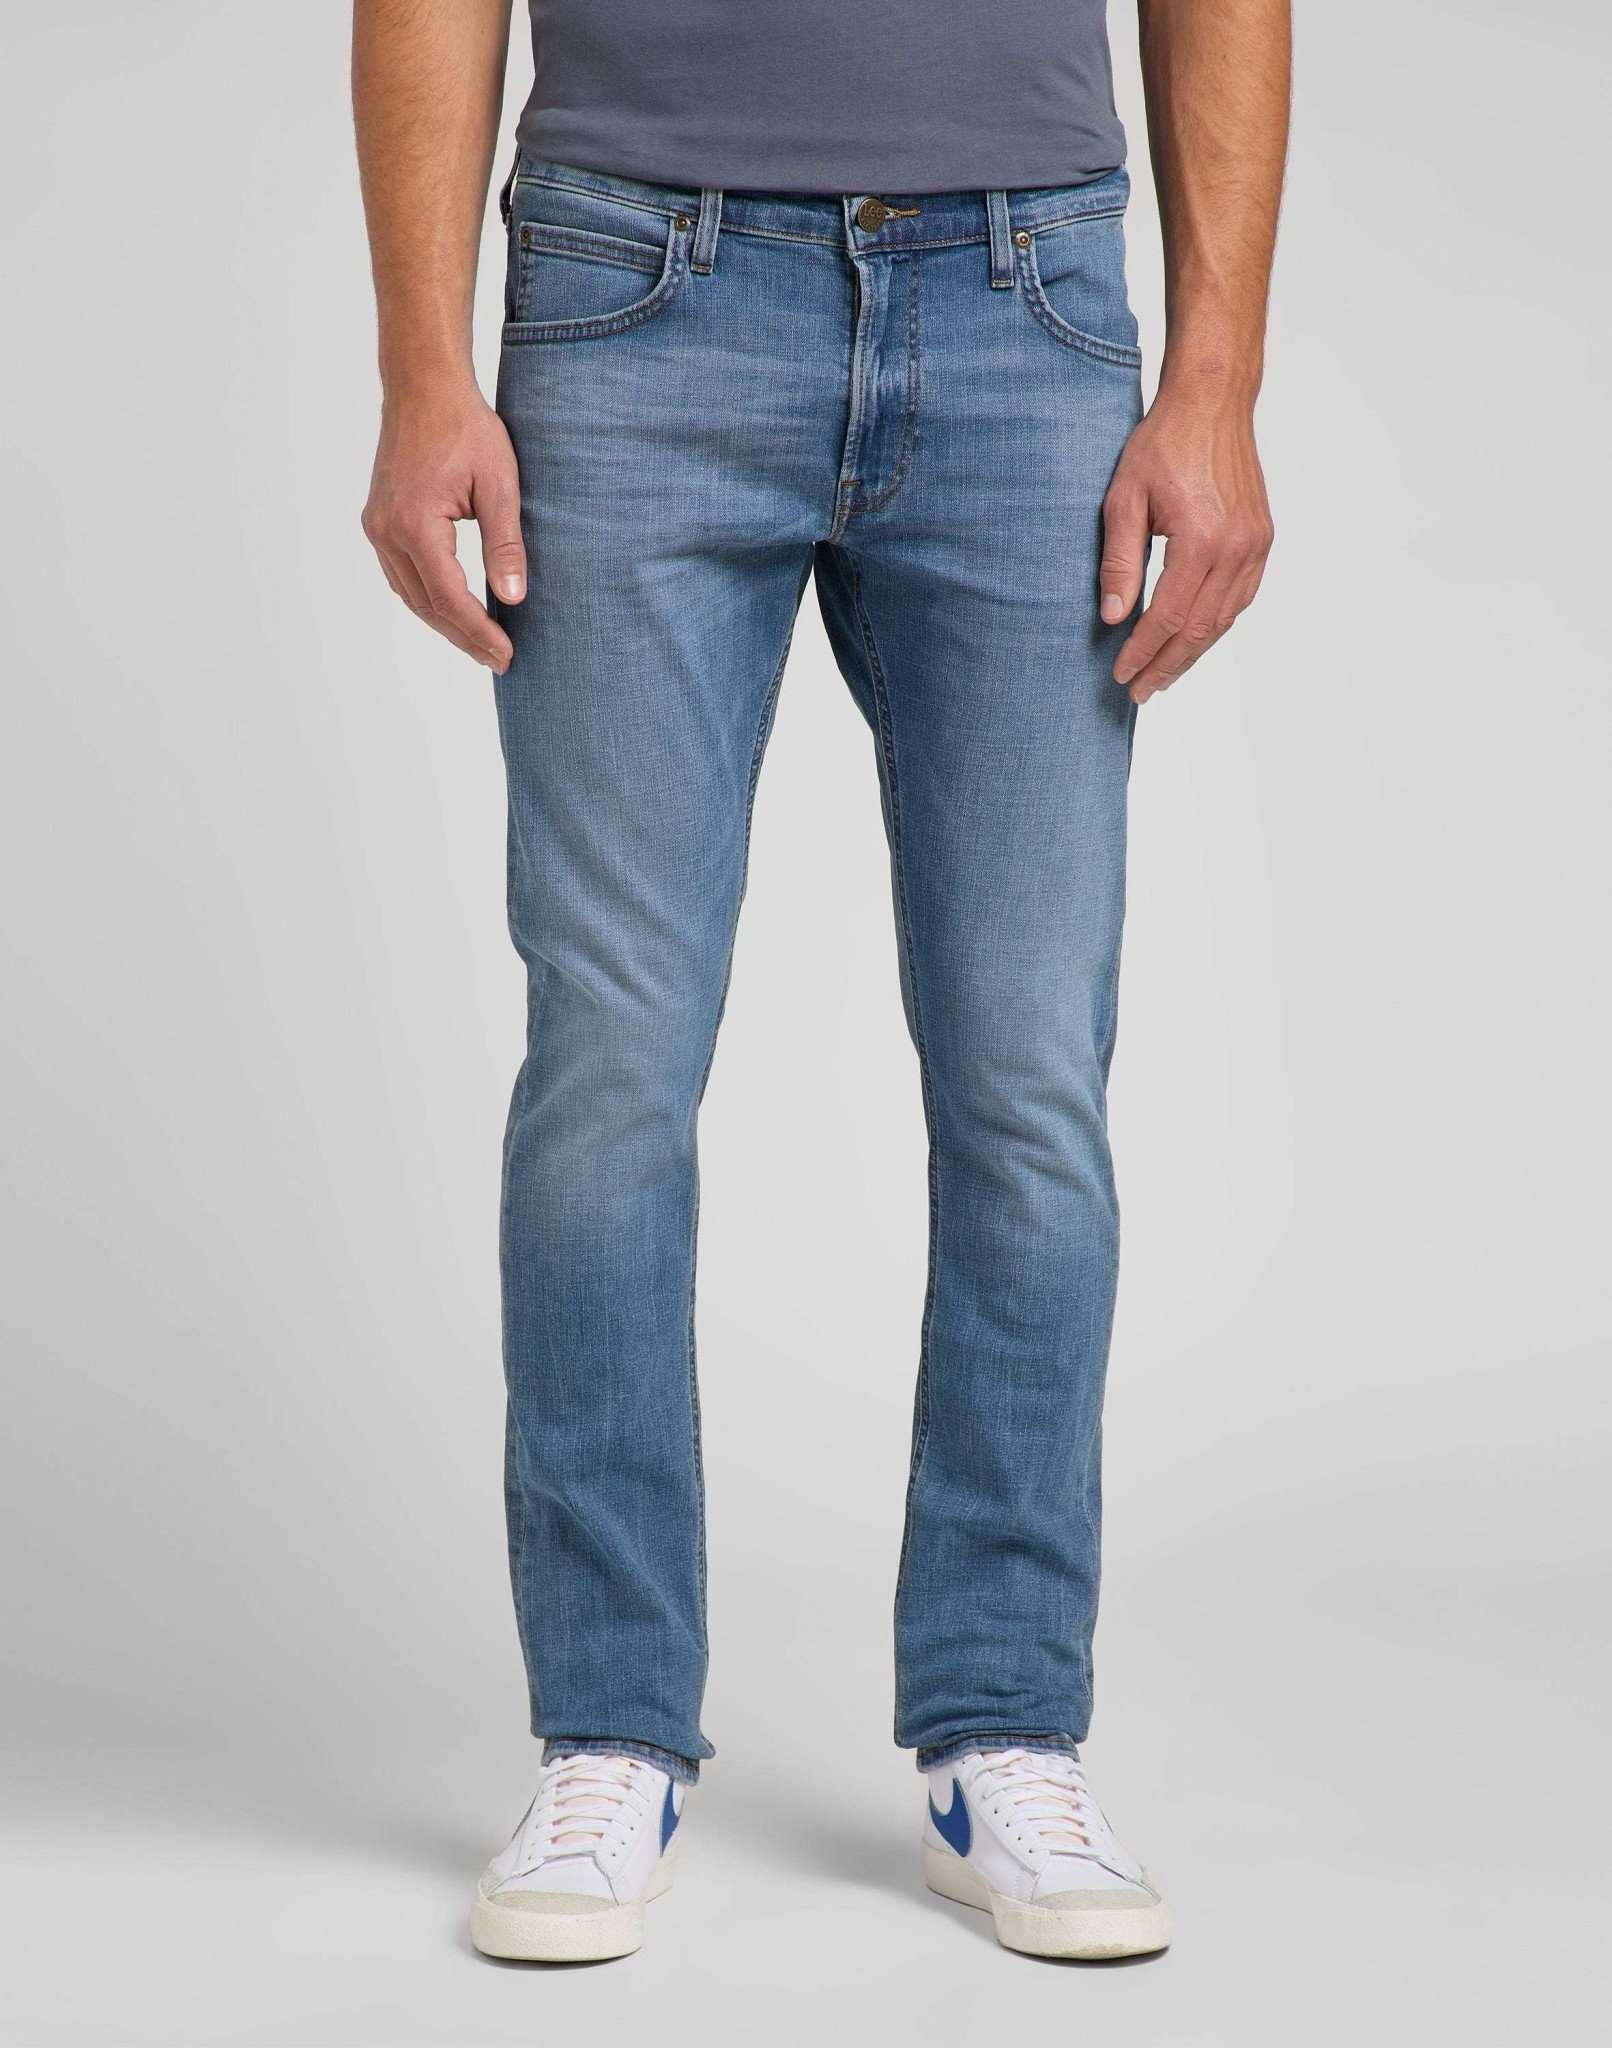 Jeans Slim Fit Luke Herren Blau Denim L32/W29 von Lee